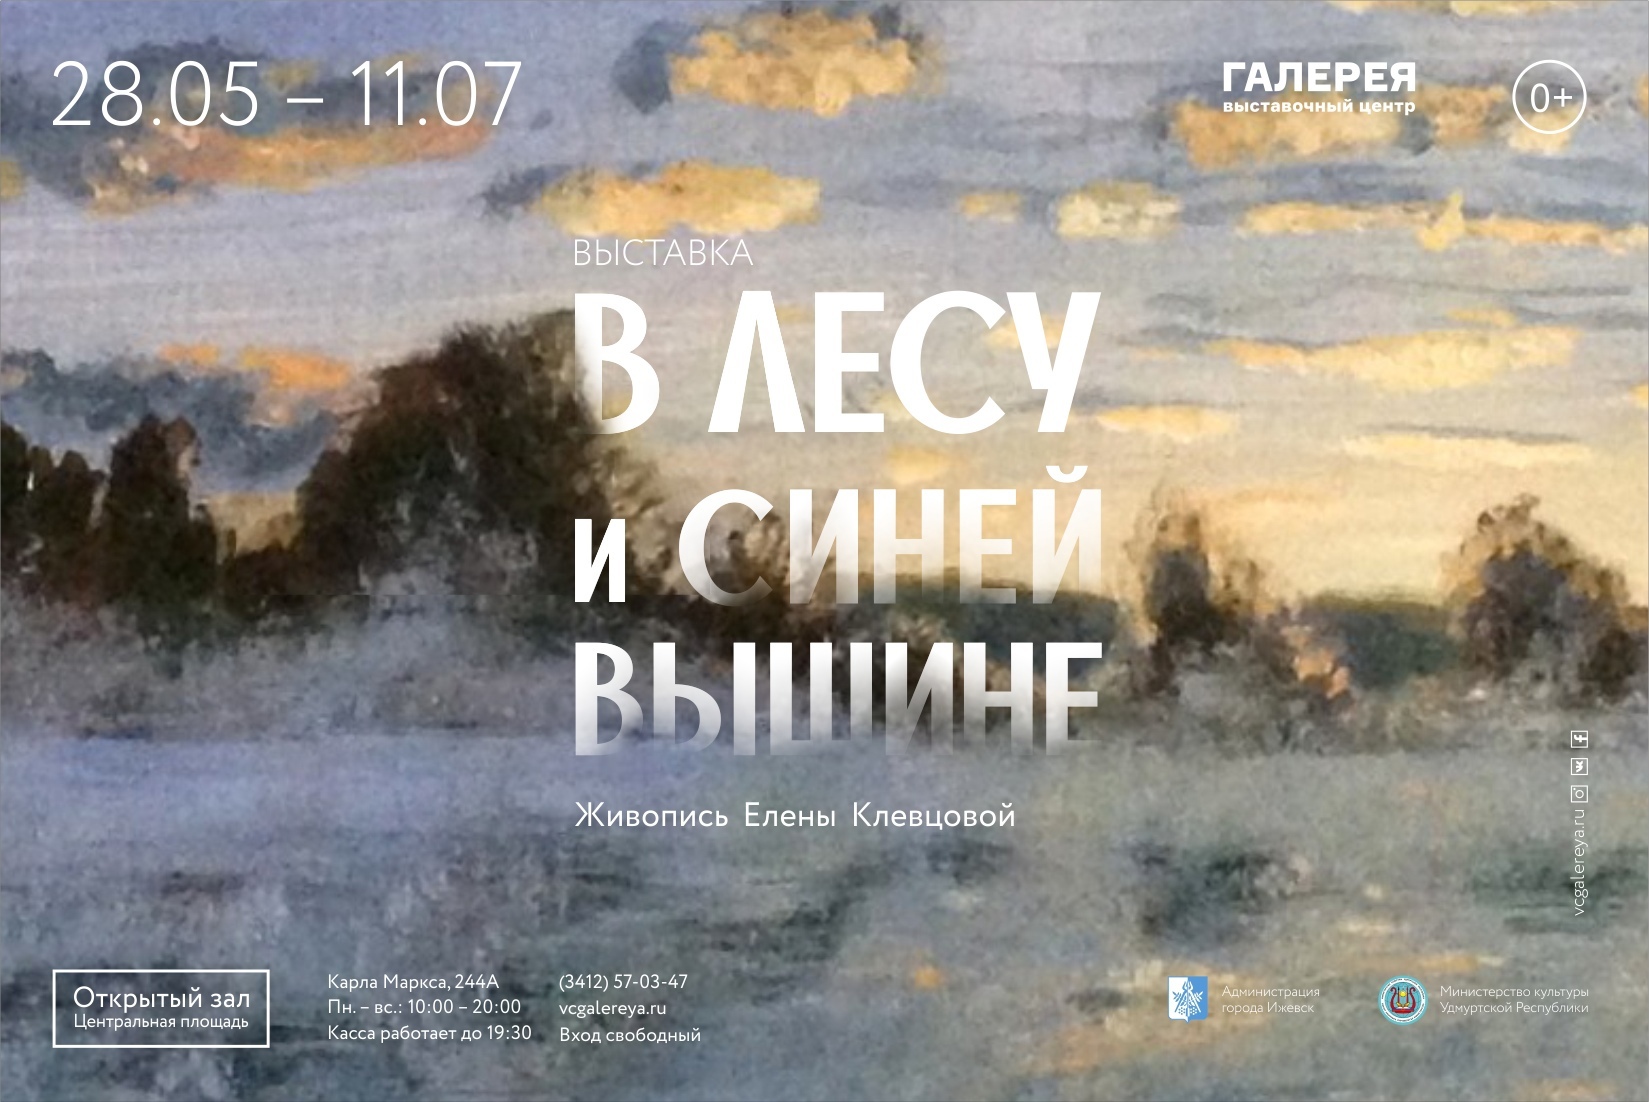 Афиша Ижевска — Выставка «В лесу и синей вышине»